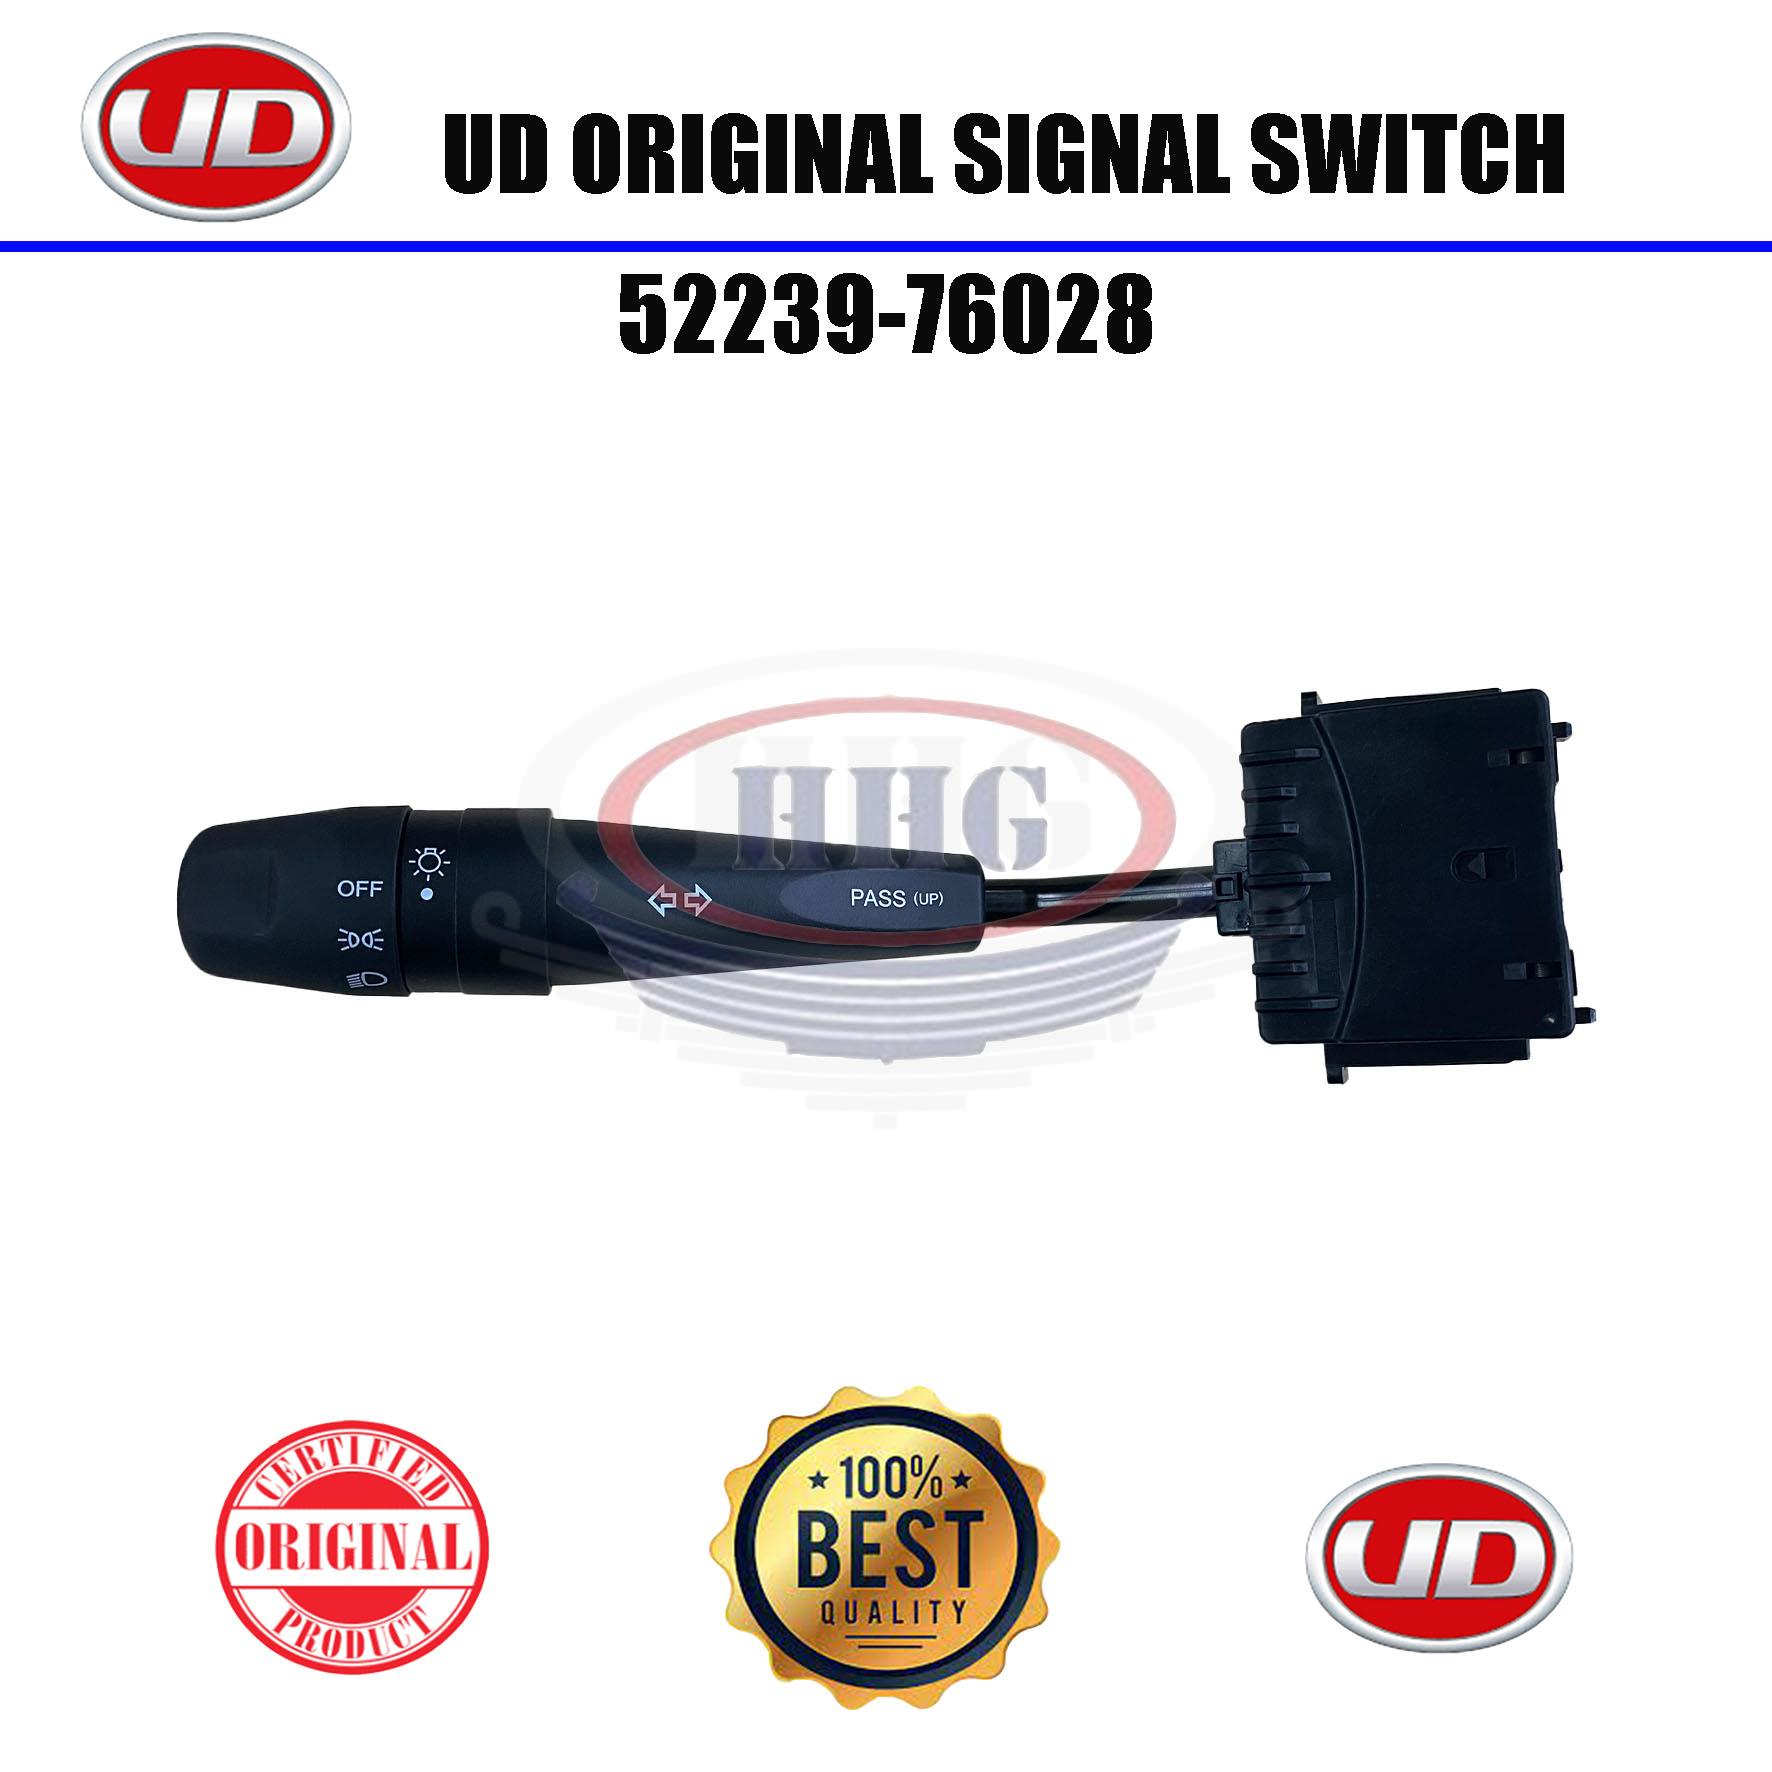 UD Original Quester/PKE250 Signal Switch (52239-76028)